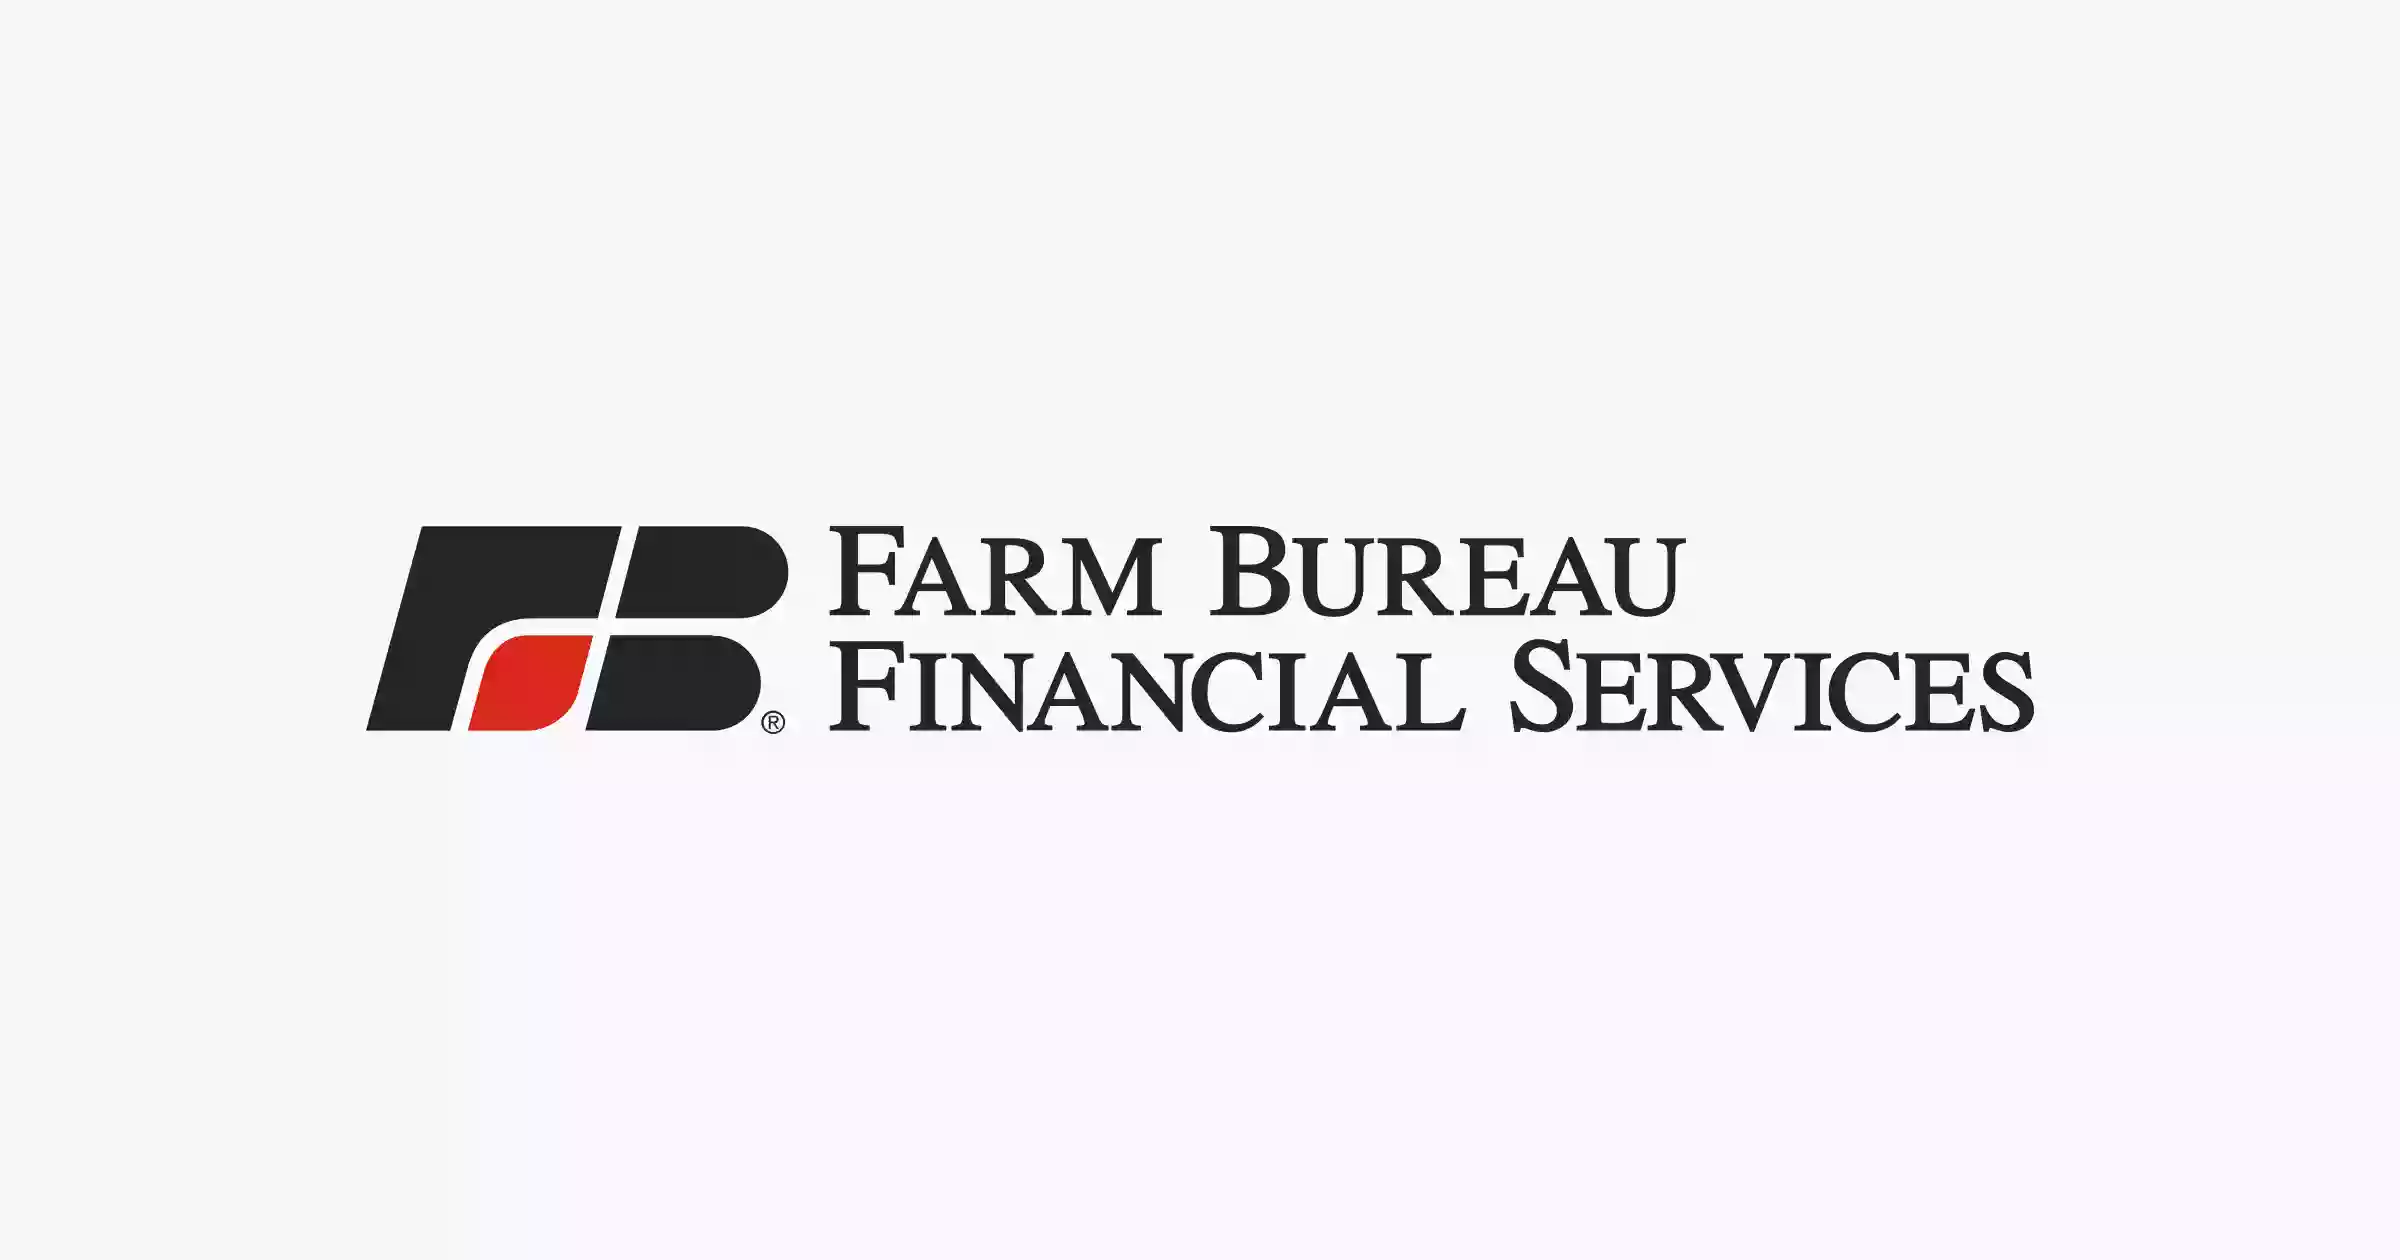 Farm Bureau Financial Services Corporate Office